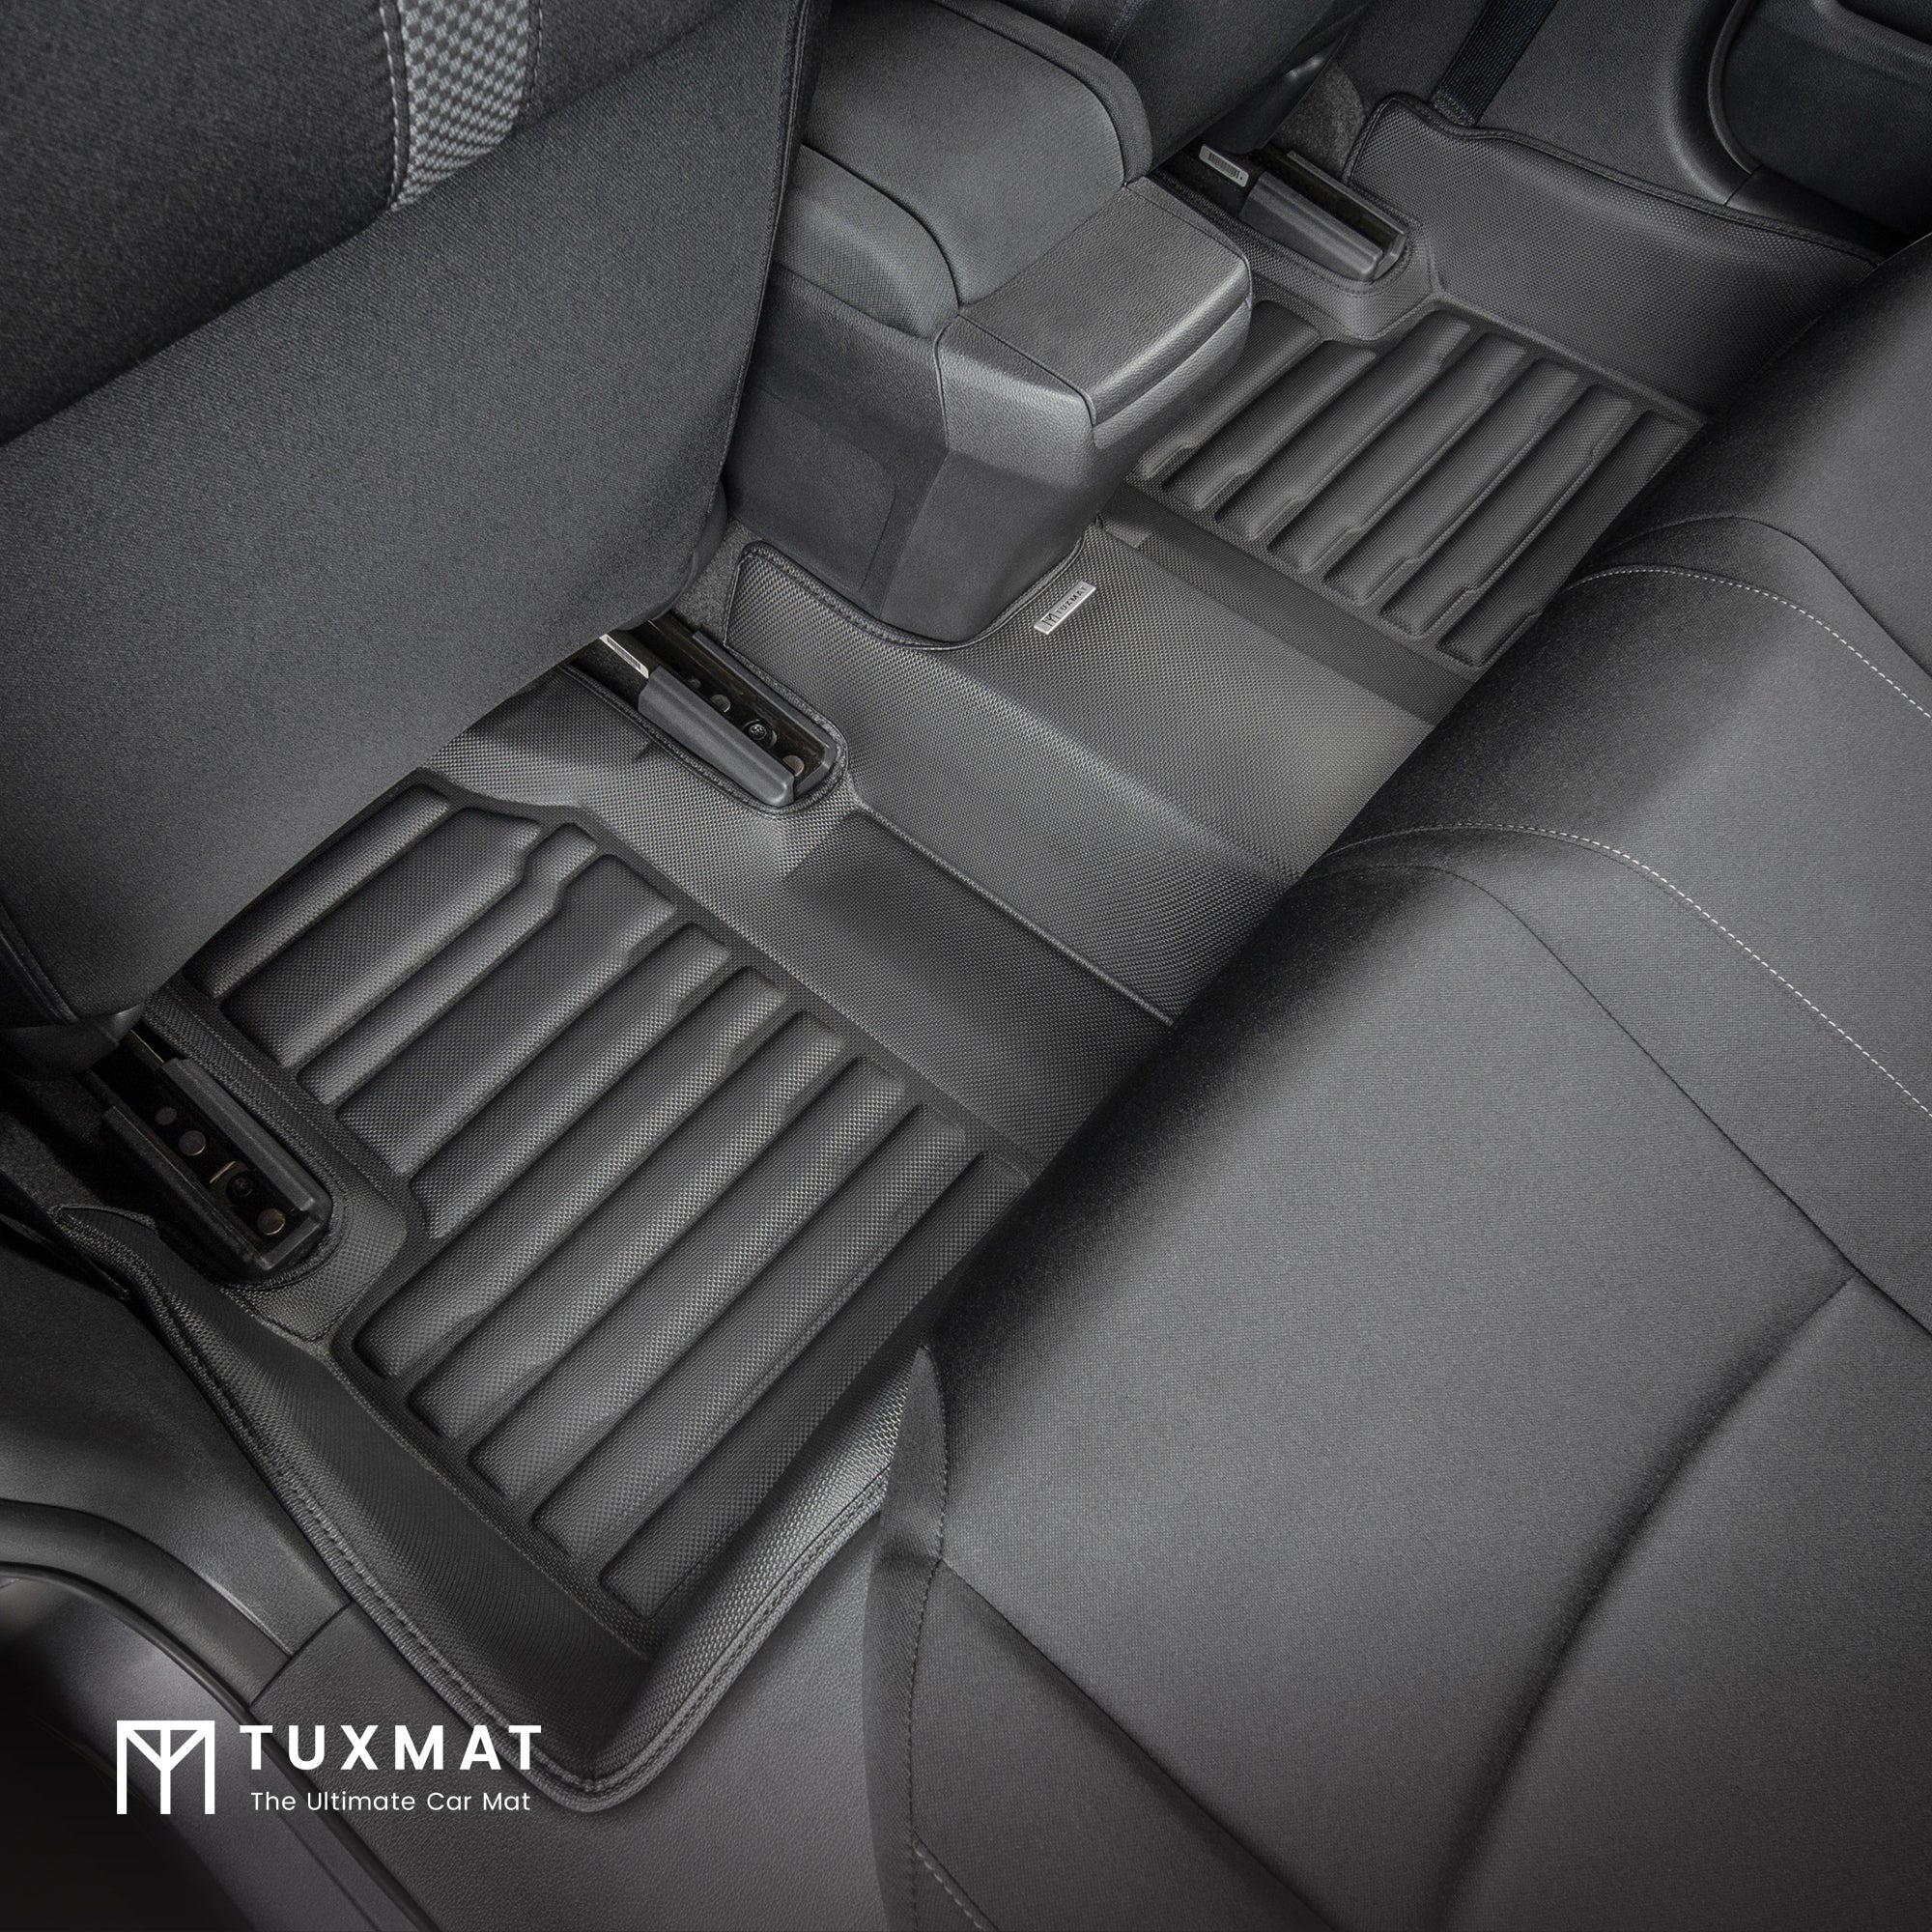 Rear TuxMat Floor Mat installed in Honda Civic Sedan/Hatchback